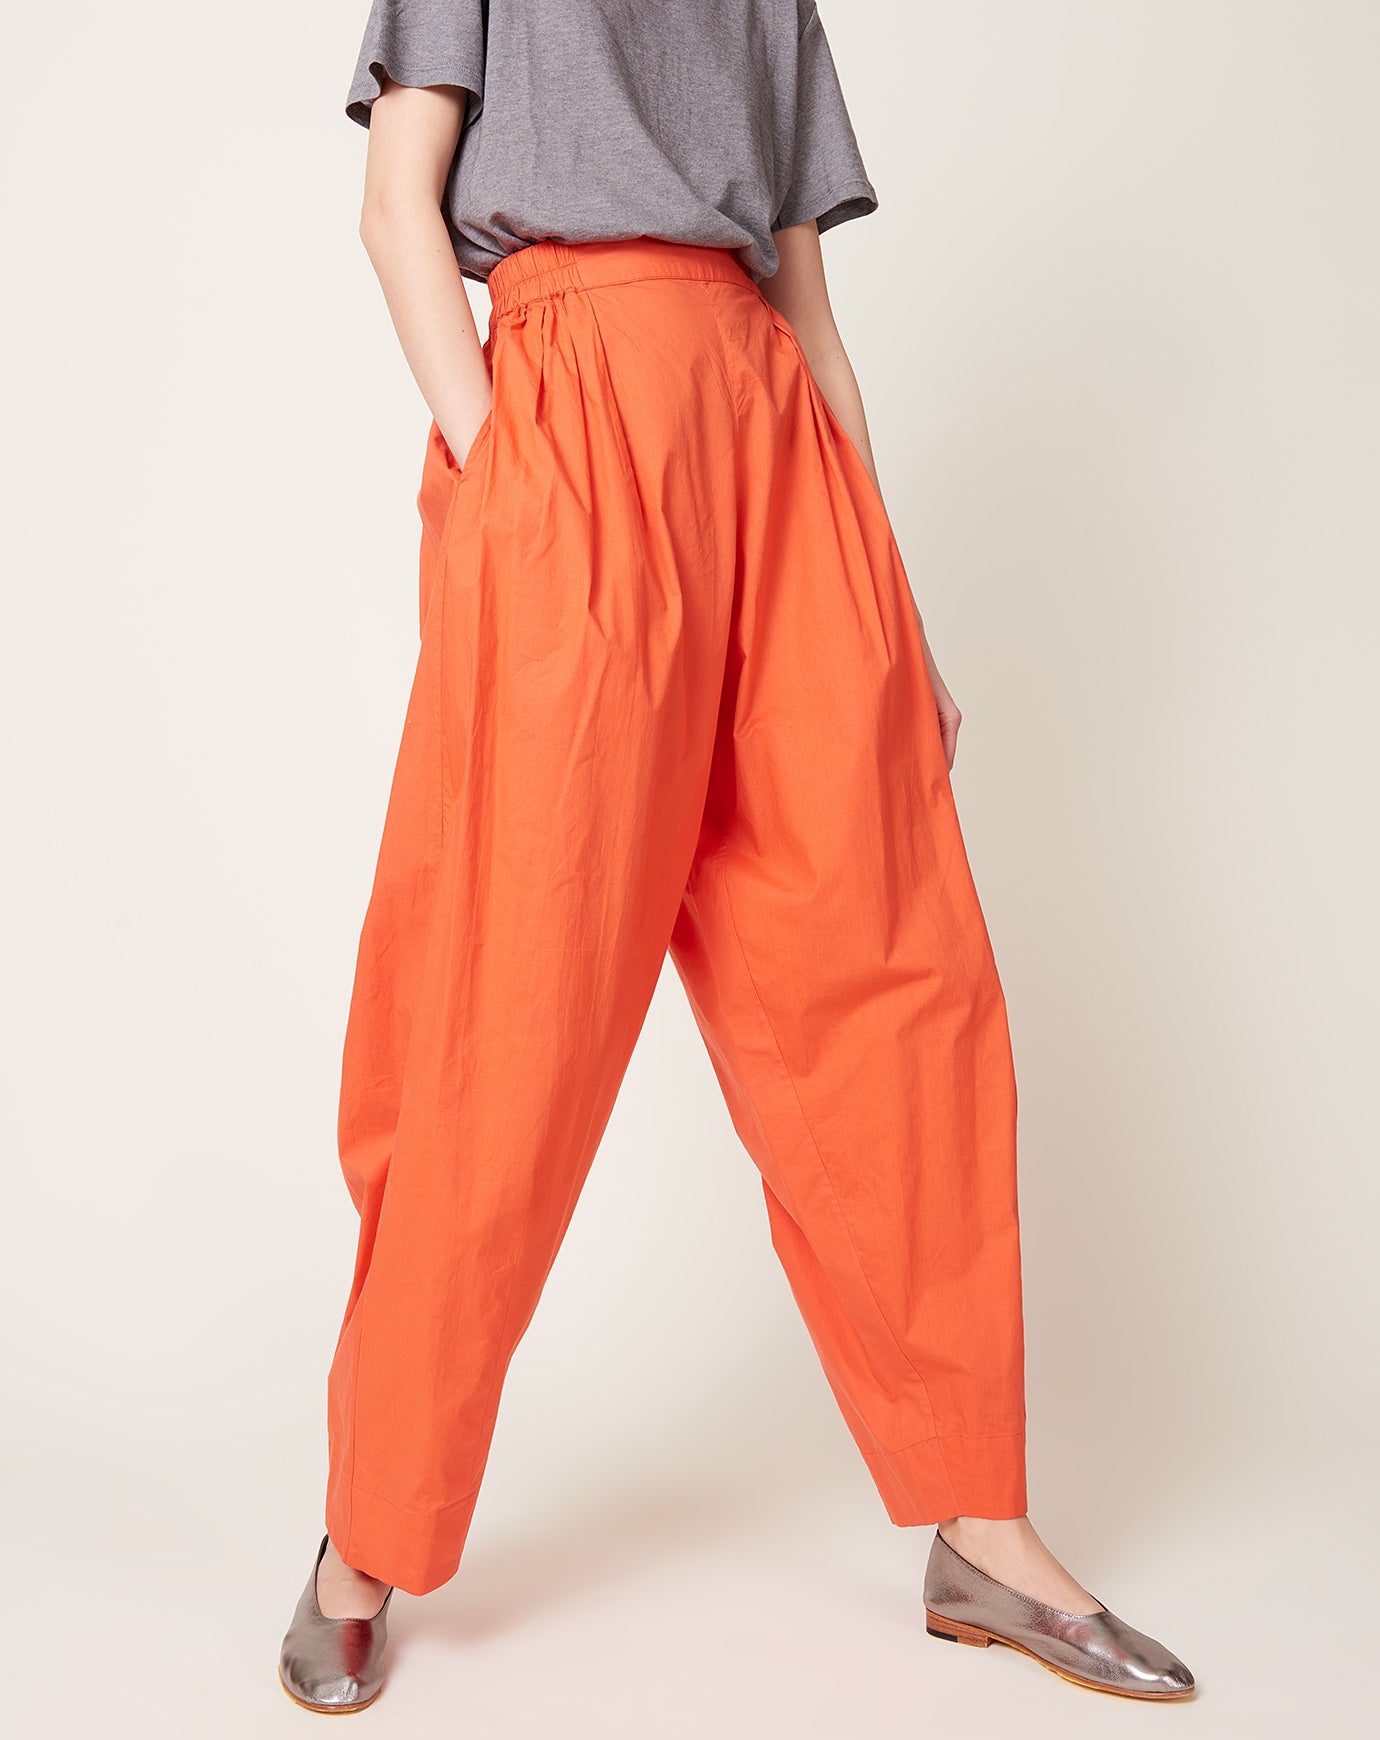 Anaak Jai Pleated Pants in Rouge Orange